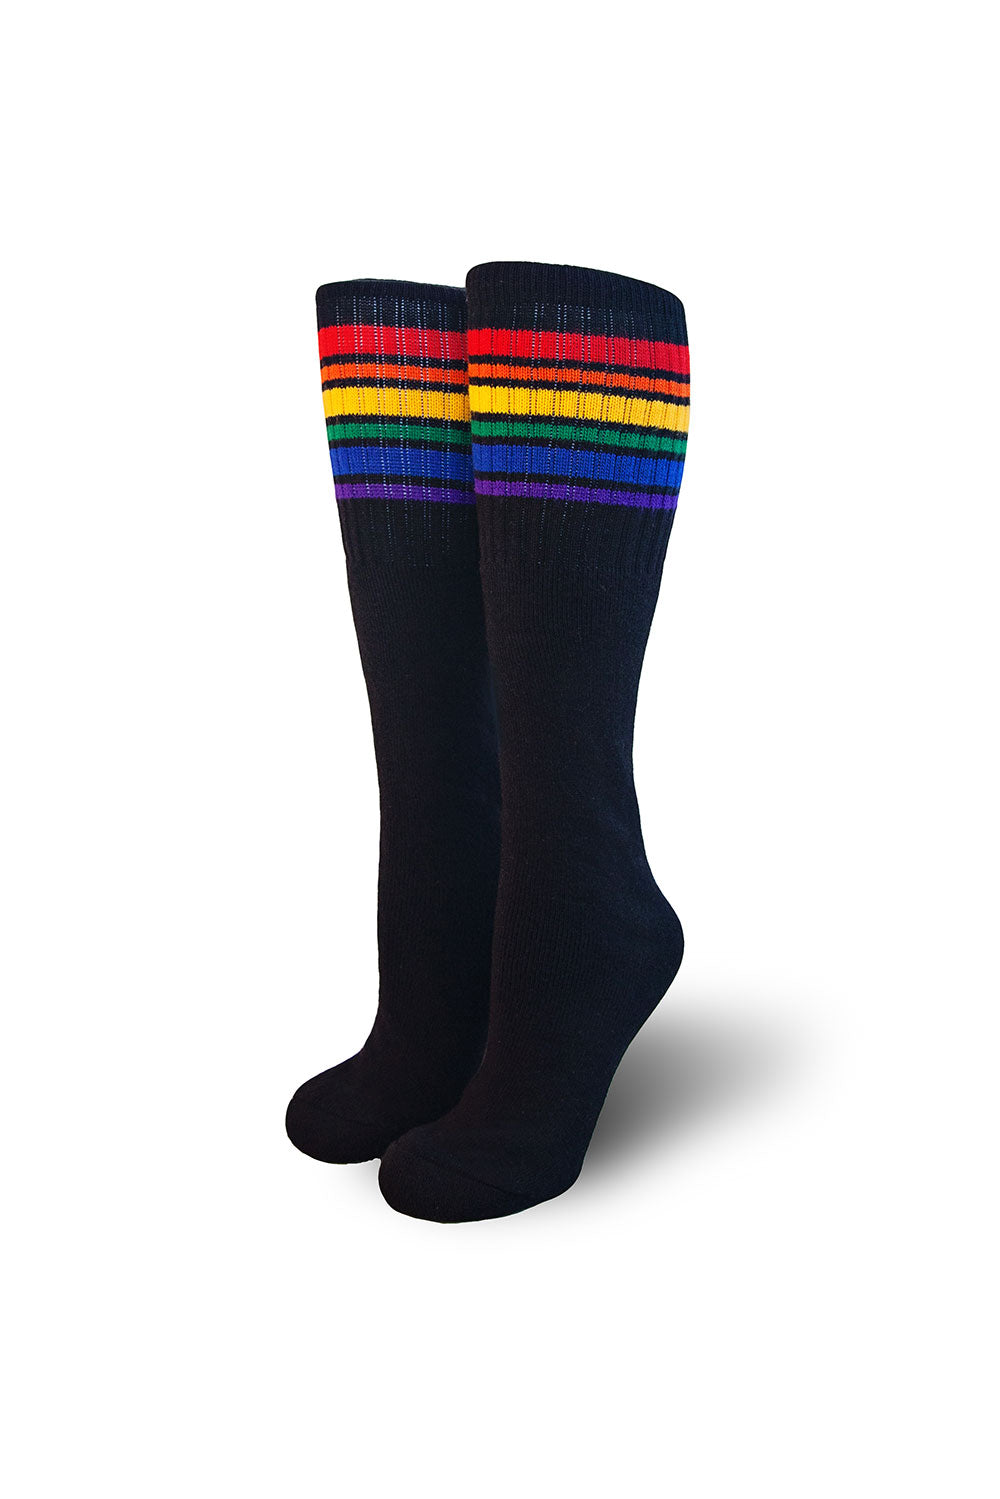 Pride Socks 10in black tubes - Brave ** Restocked